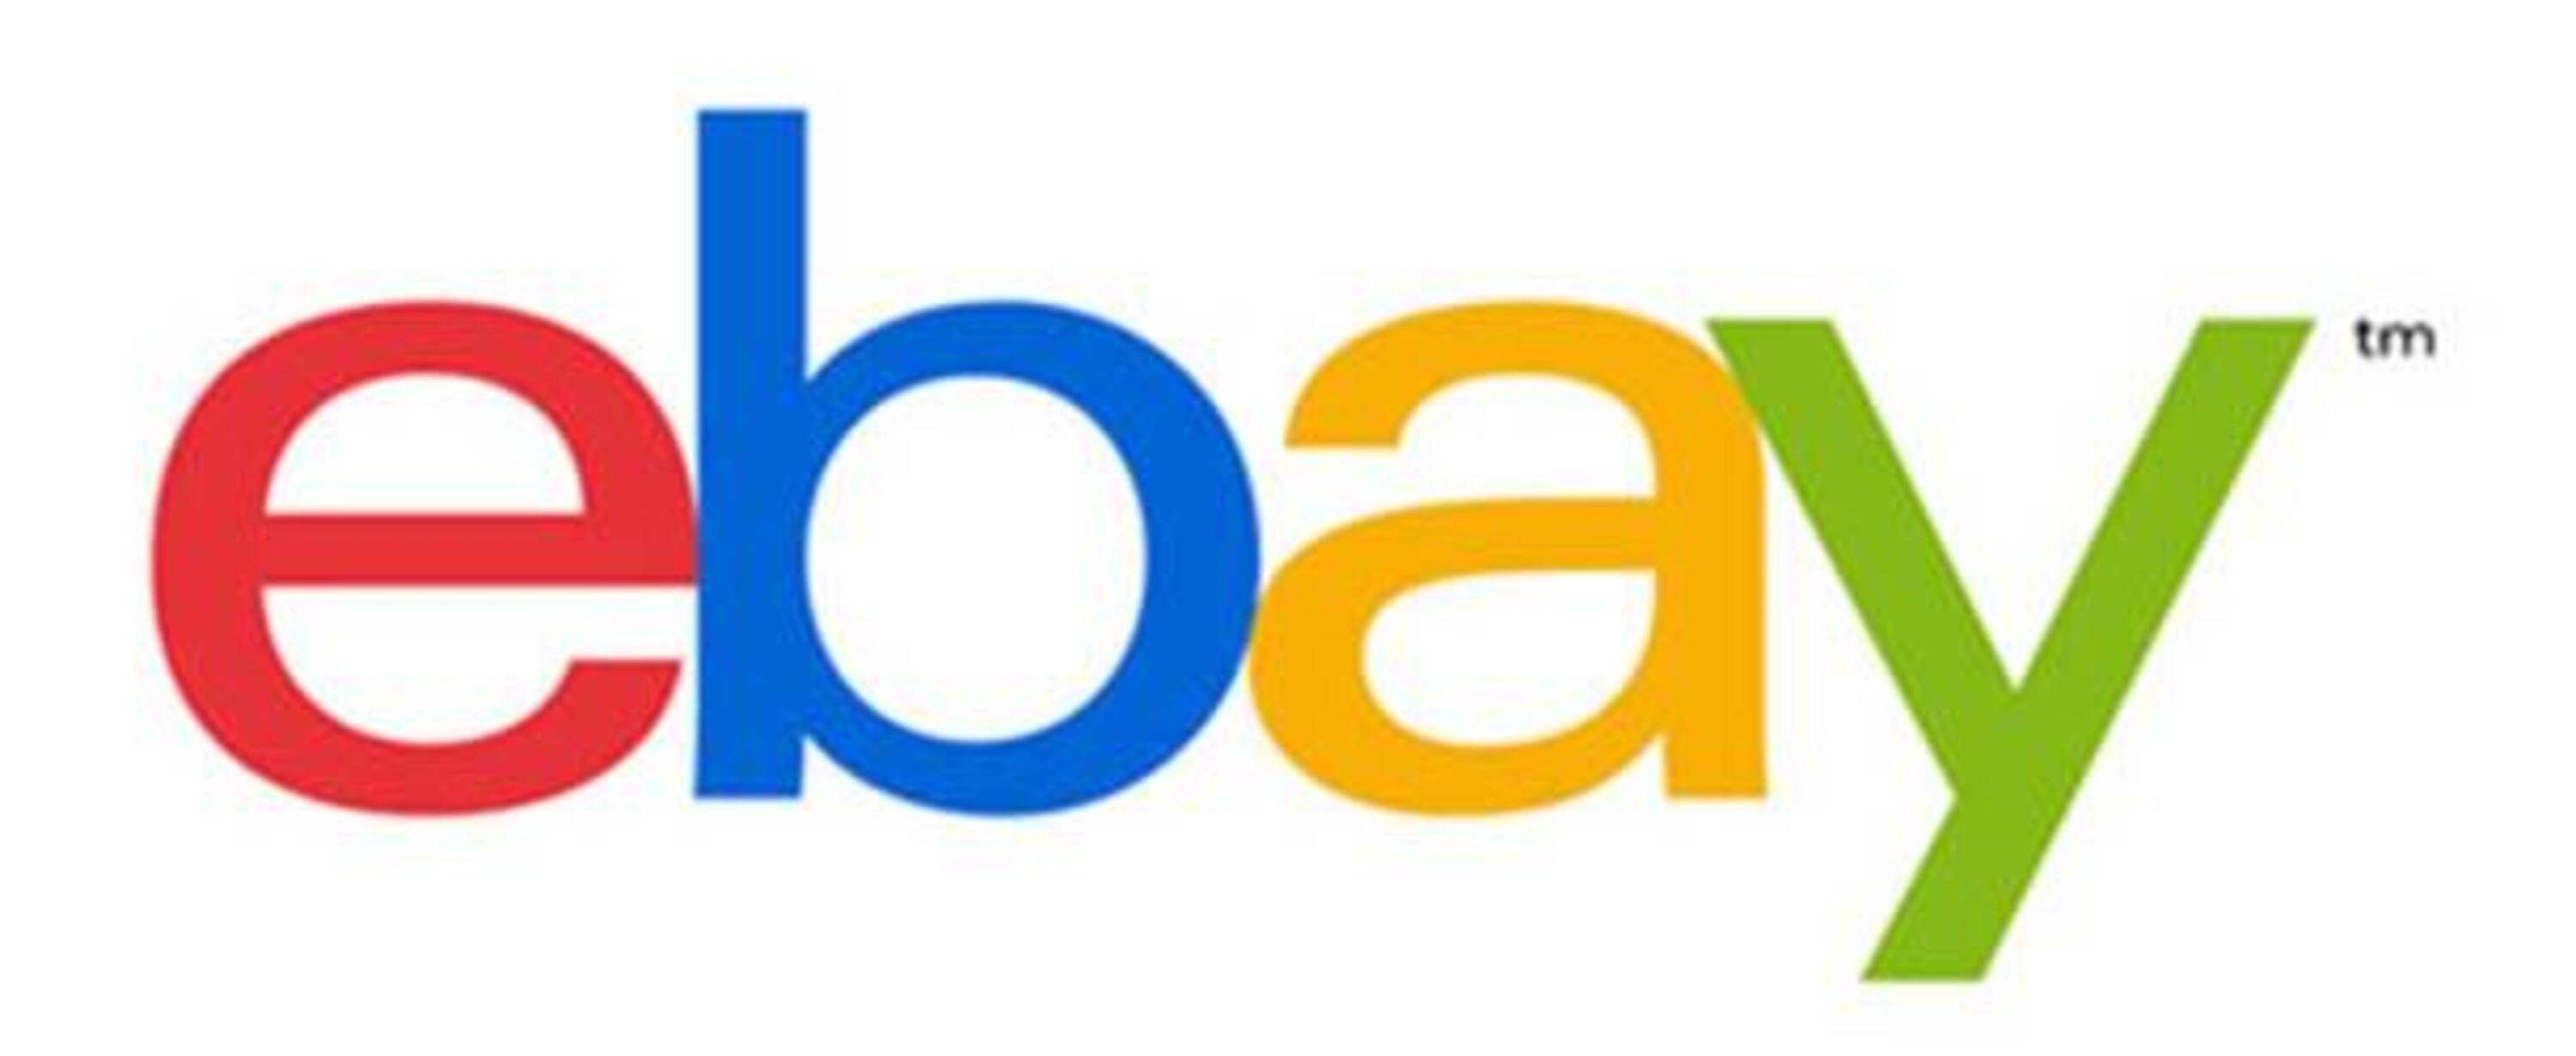 Il nuovo servizio cambio gomme tutto incluso di eBay: installazione pneumatici prepagata